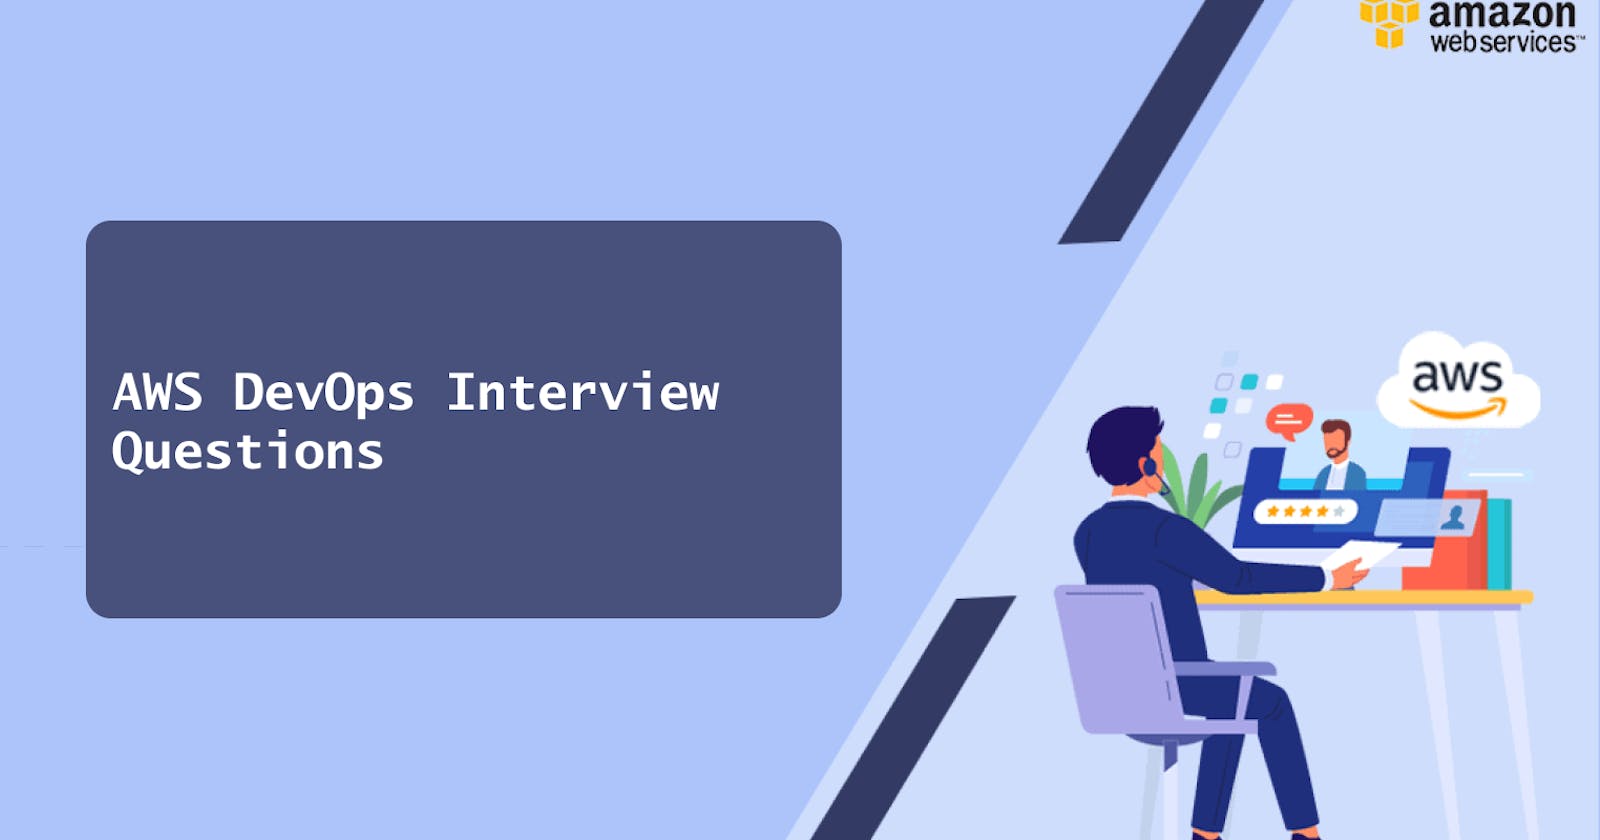 AWS Cloud DevOps Interview questions.